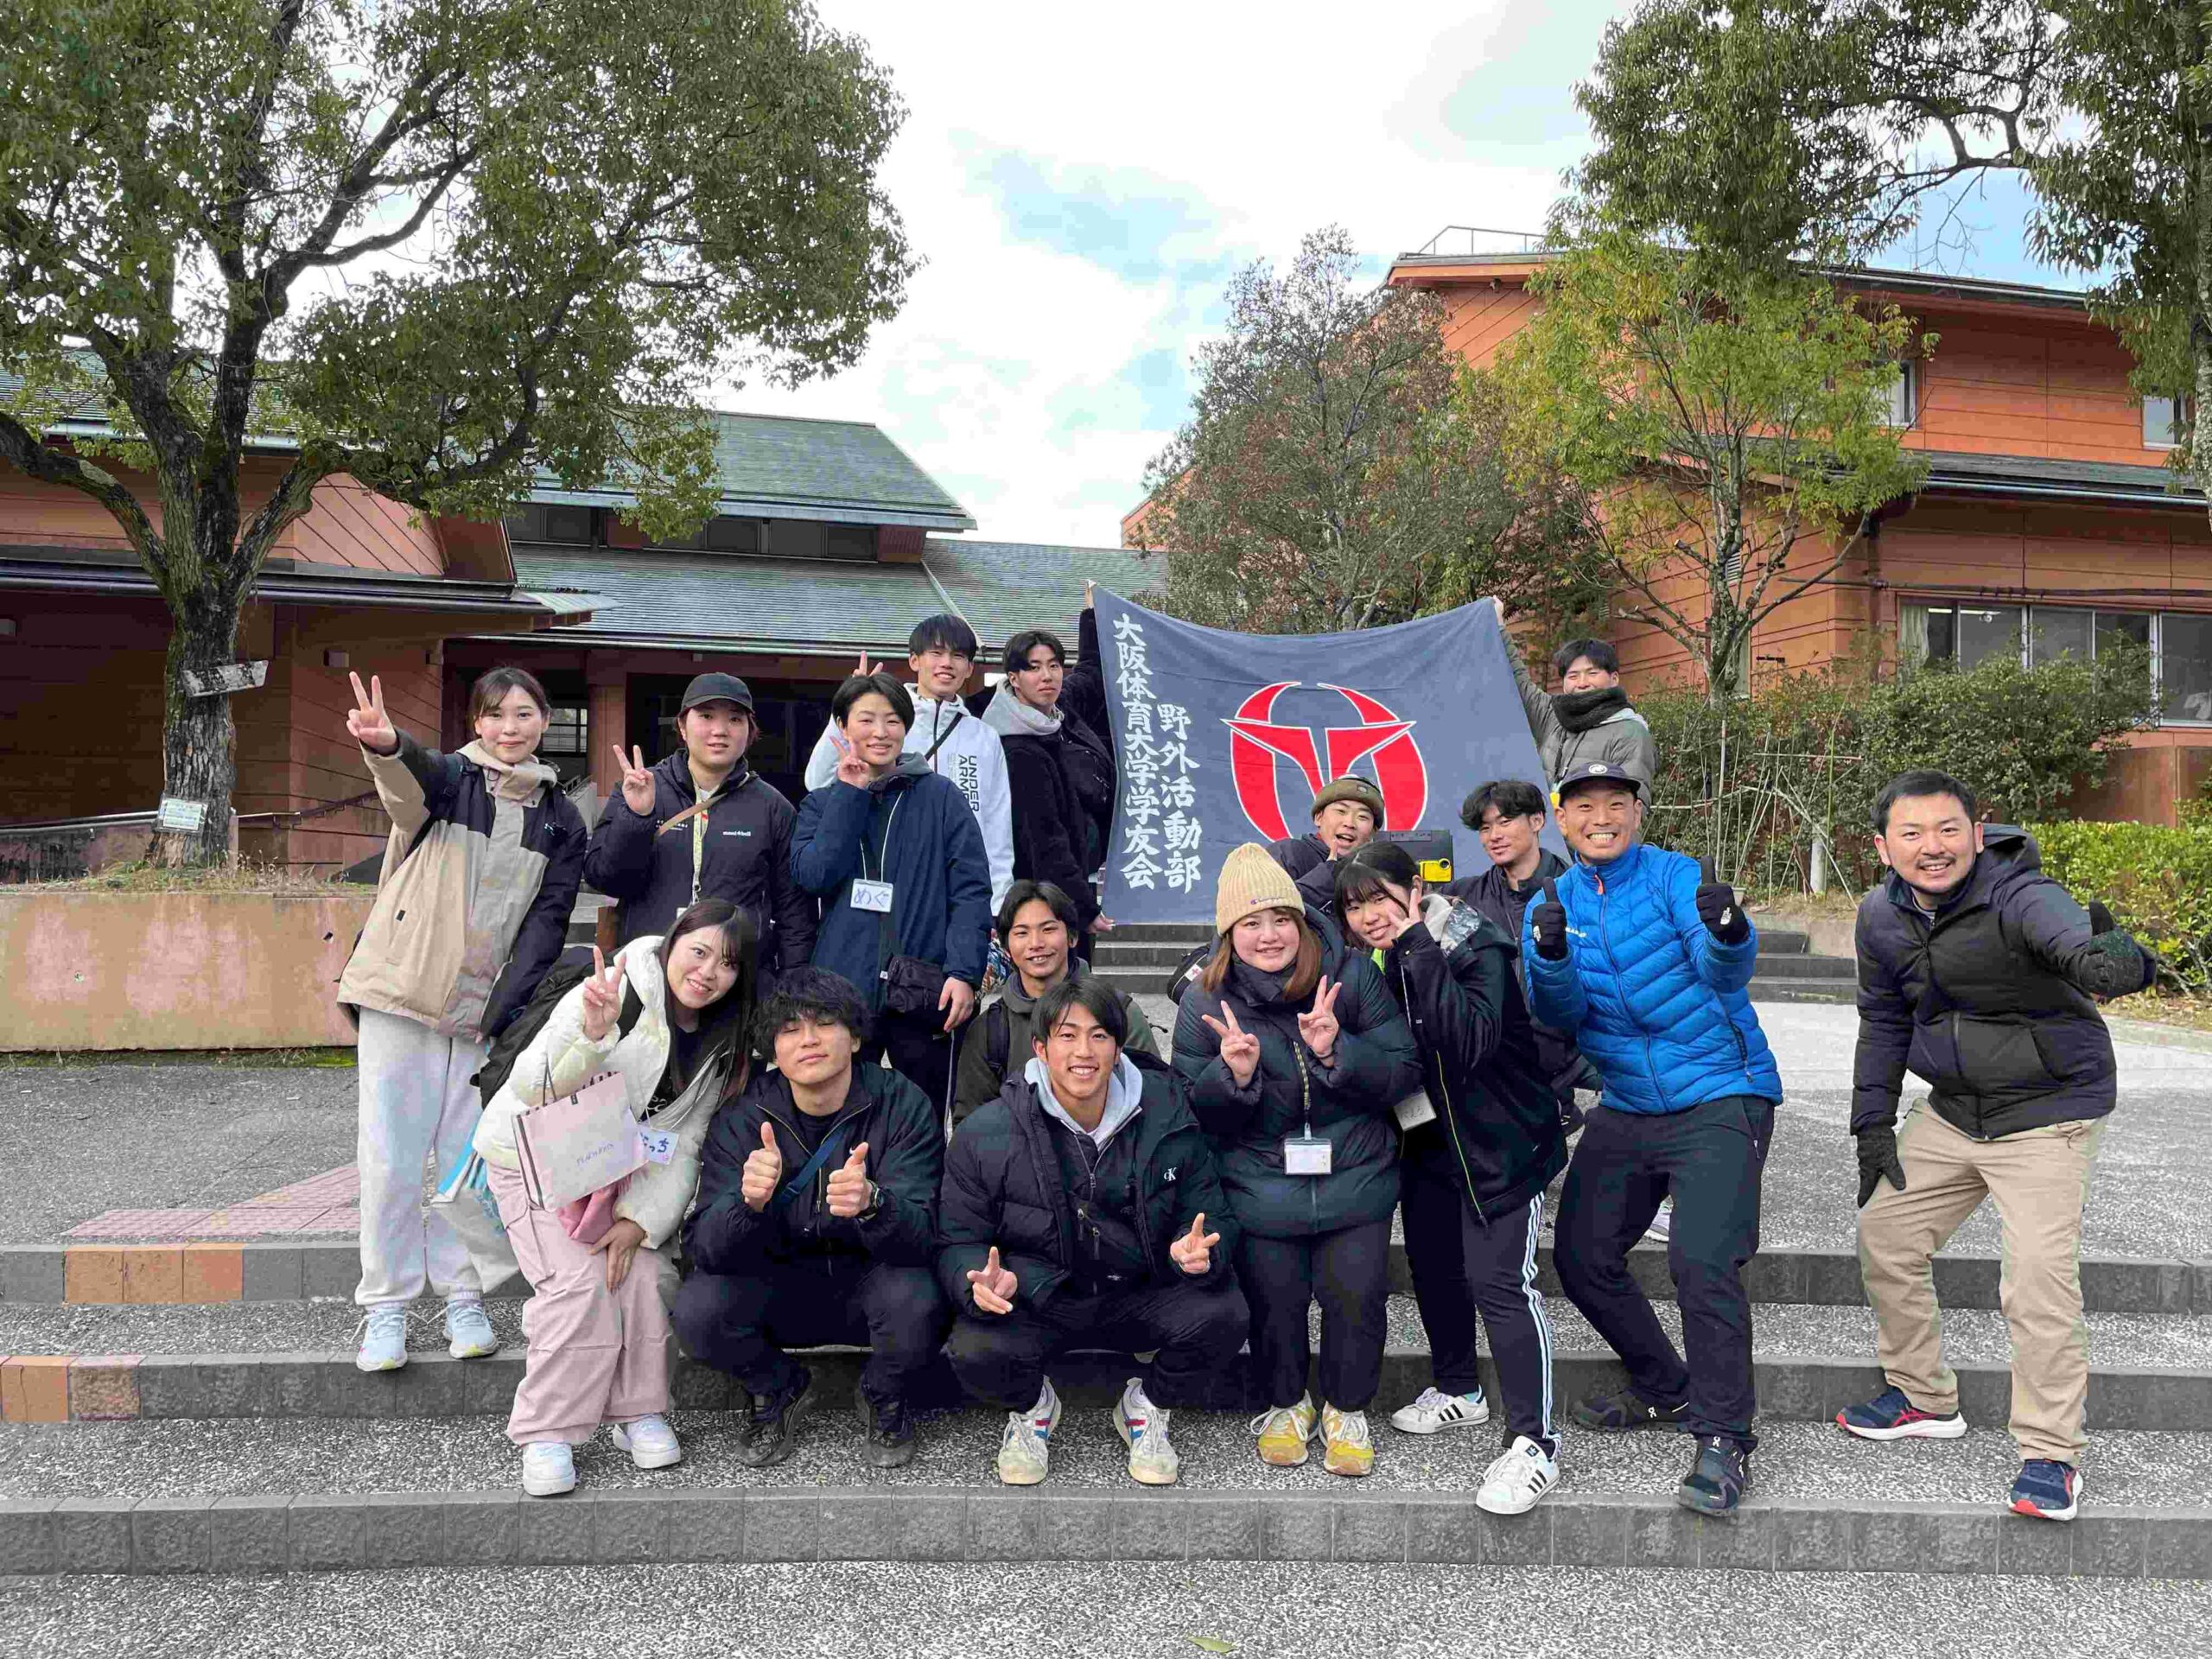 大阪体育大学野外活動部、德田ゼミなどの学生。２日間全力で子どもたちと向き合い、学生も貴重な学びを得ました